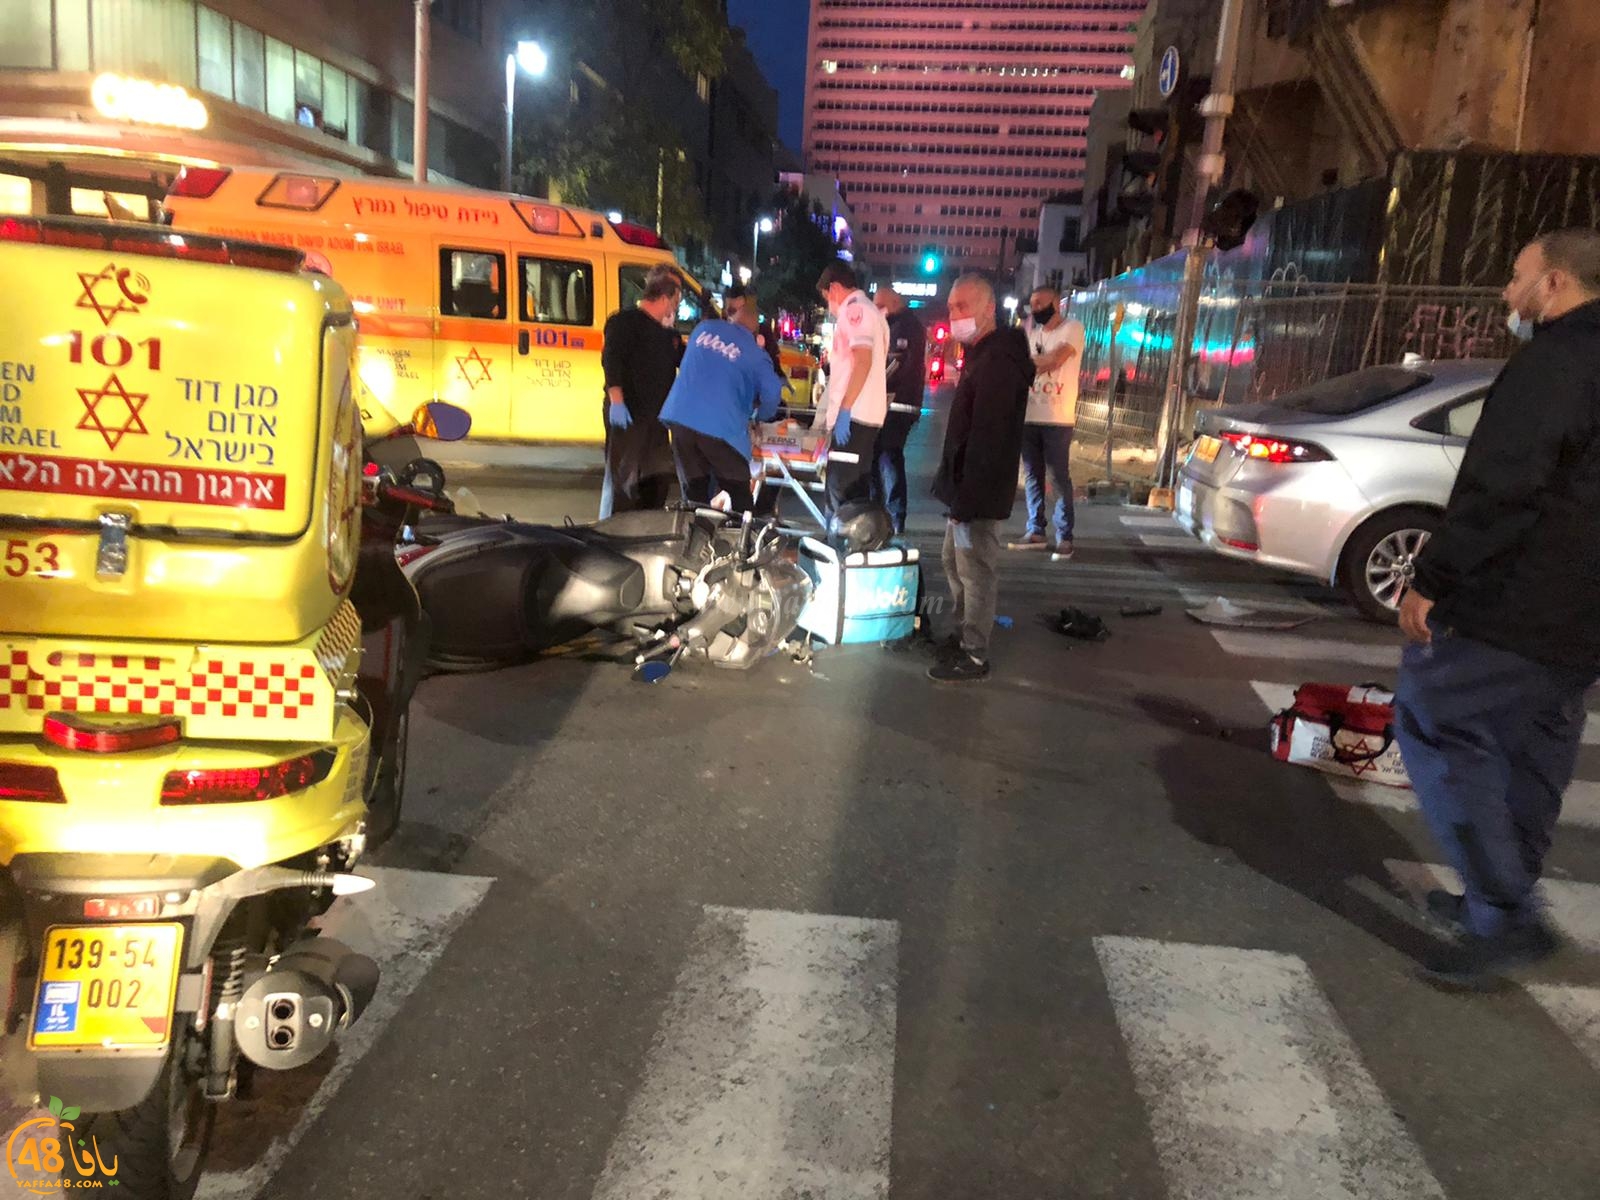 صور: إصابتان في حادث طرق بين درّاجتين ناريّتين ومركبة شرق يافا